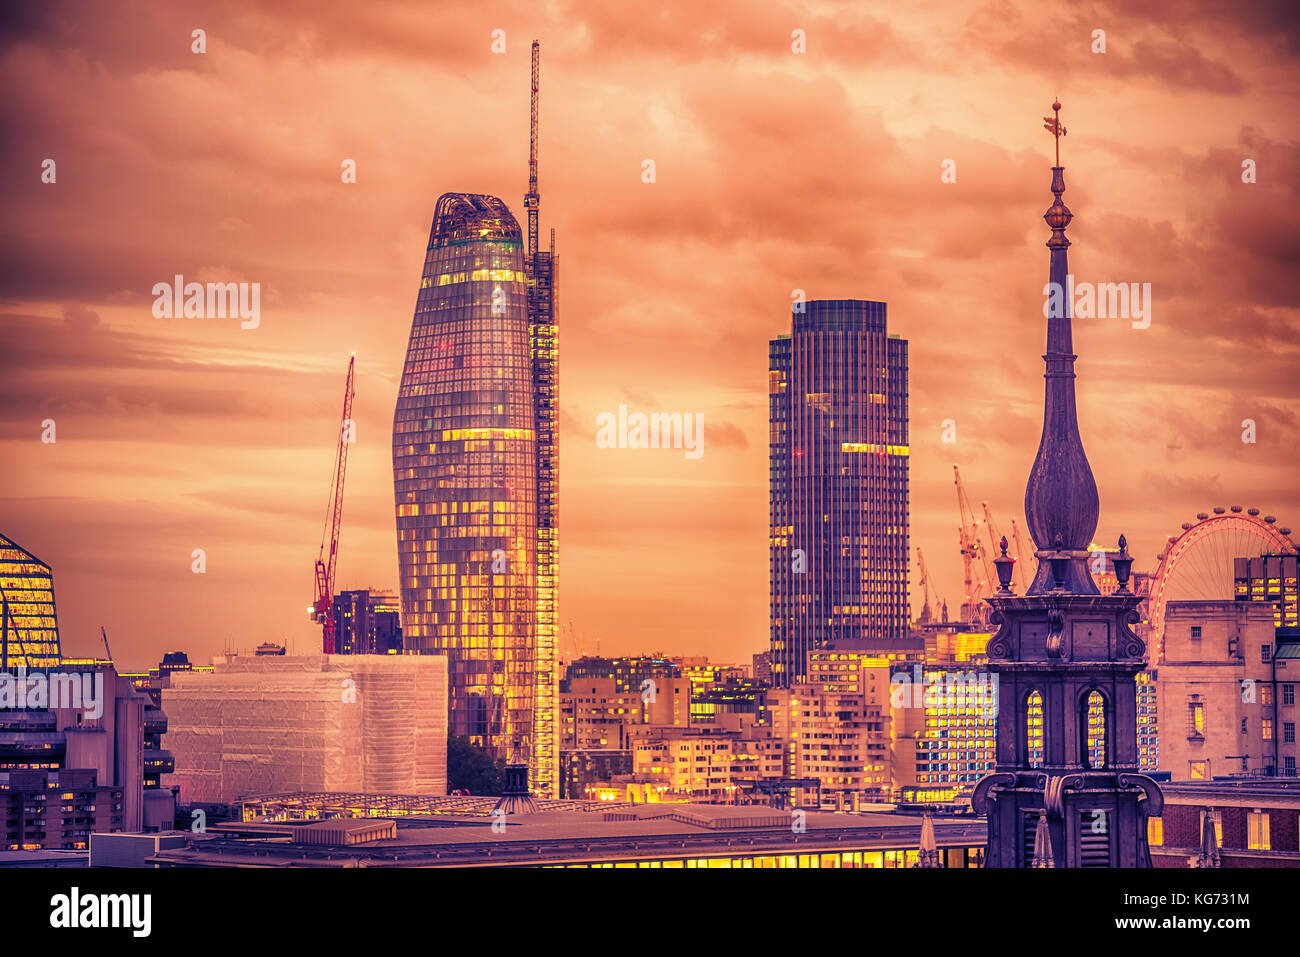 Londres, Reino Unido - 2 oktober, 2017: antena vista nocturna de la ciudad Foto de stock